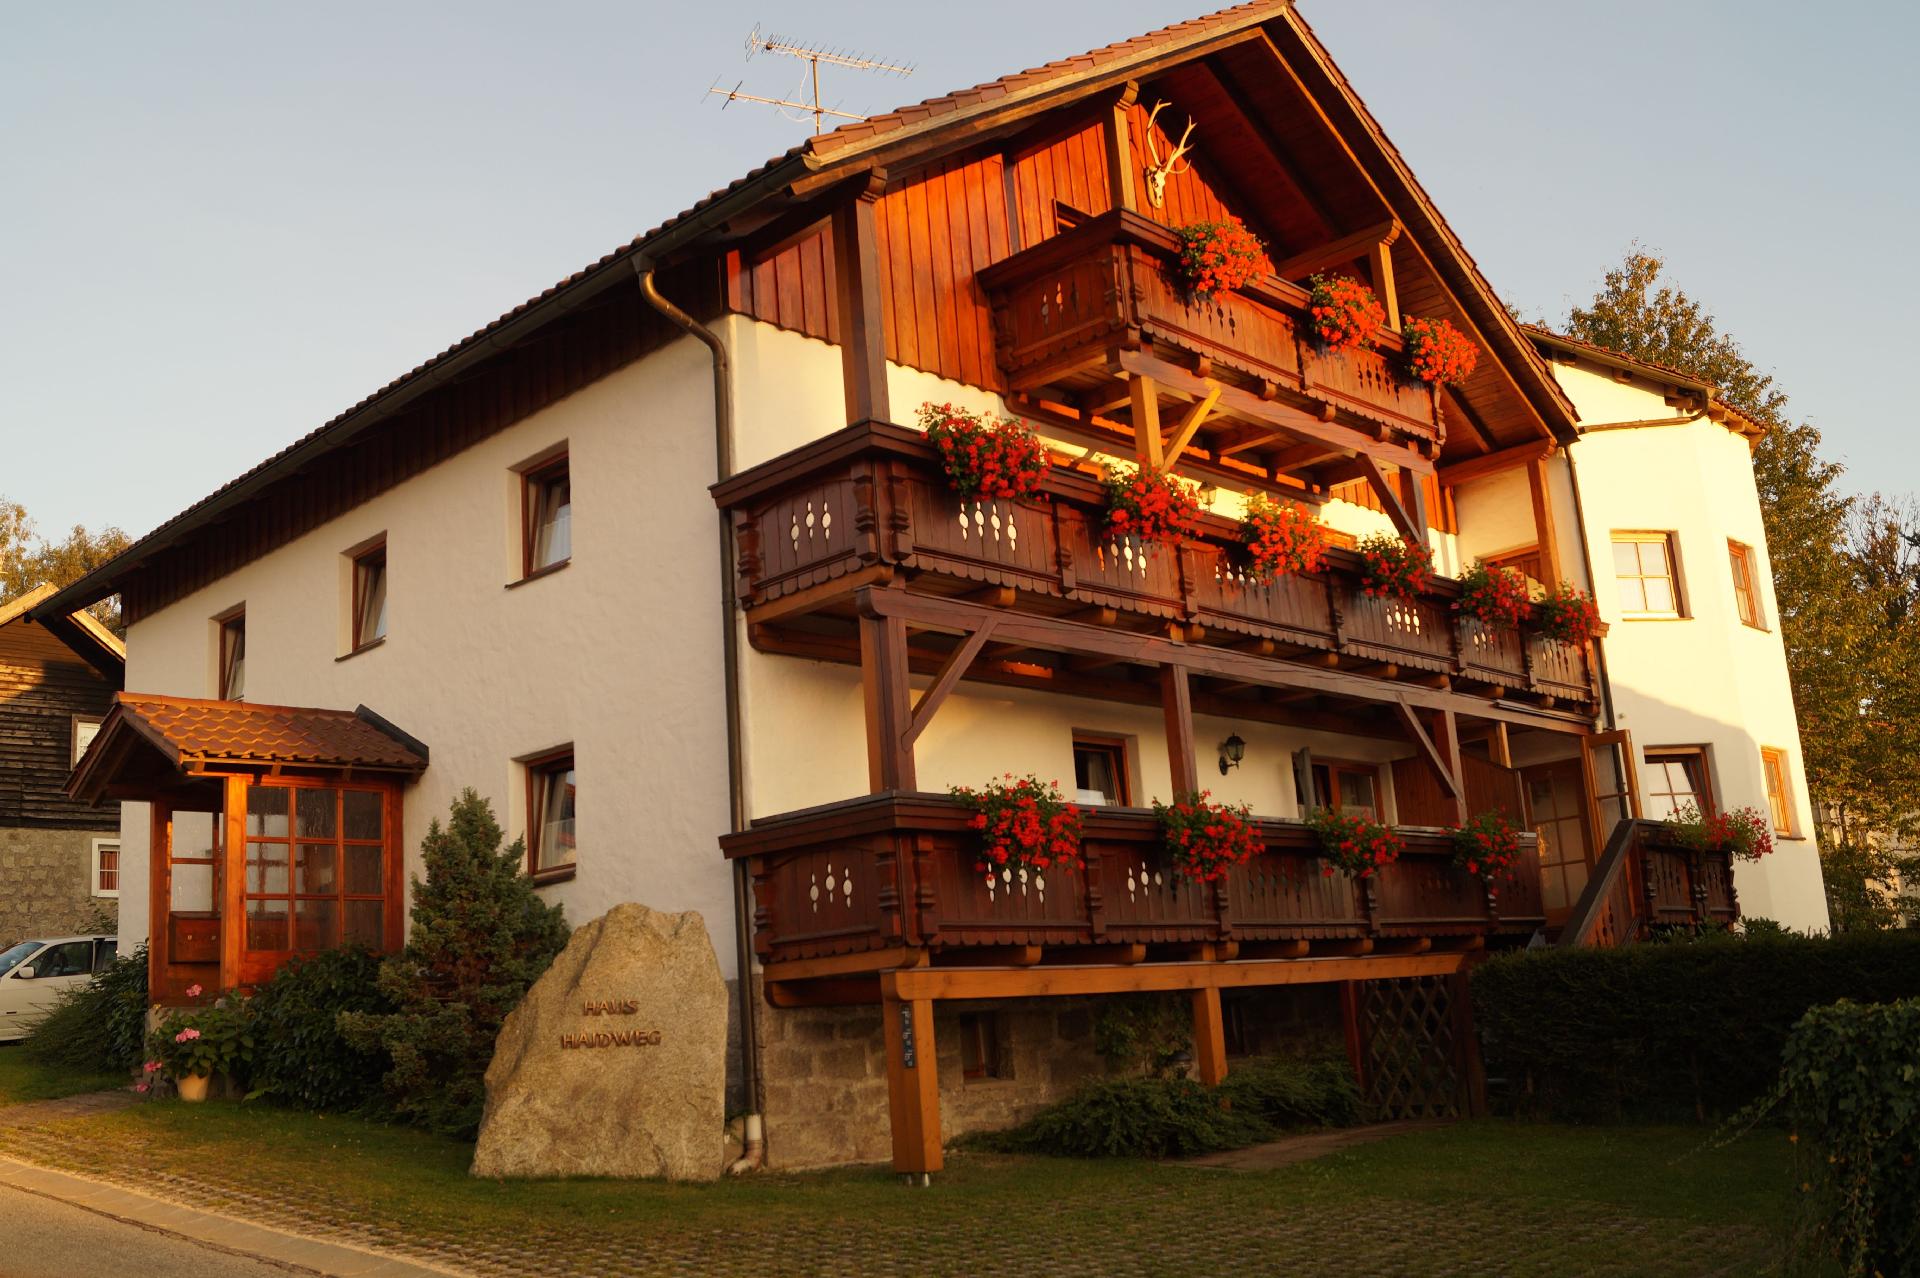 Ferienhaus in Haidmühle mit Großem Gart  in Europa